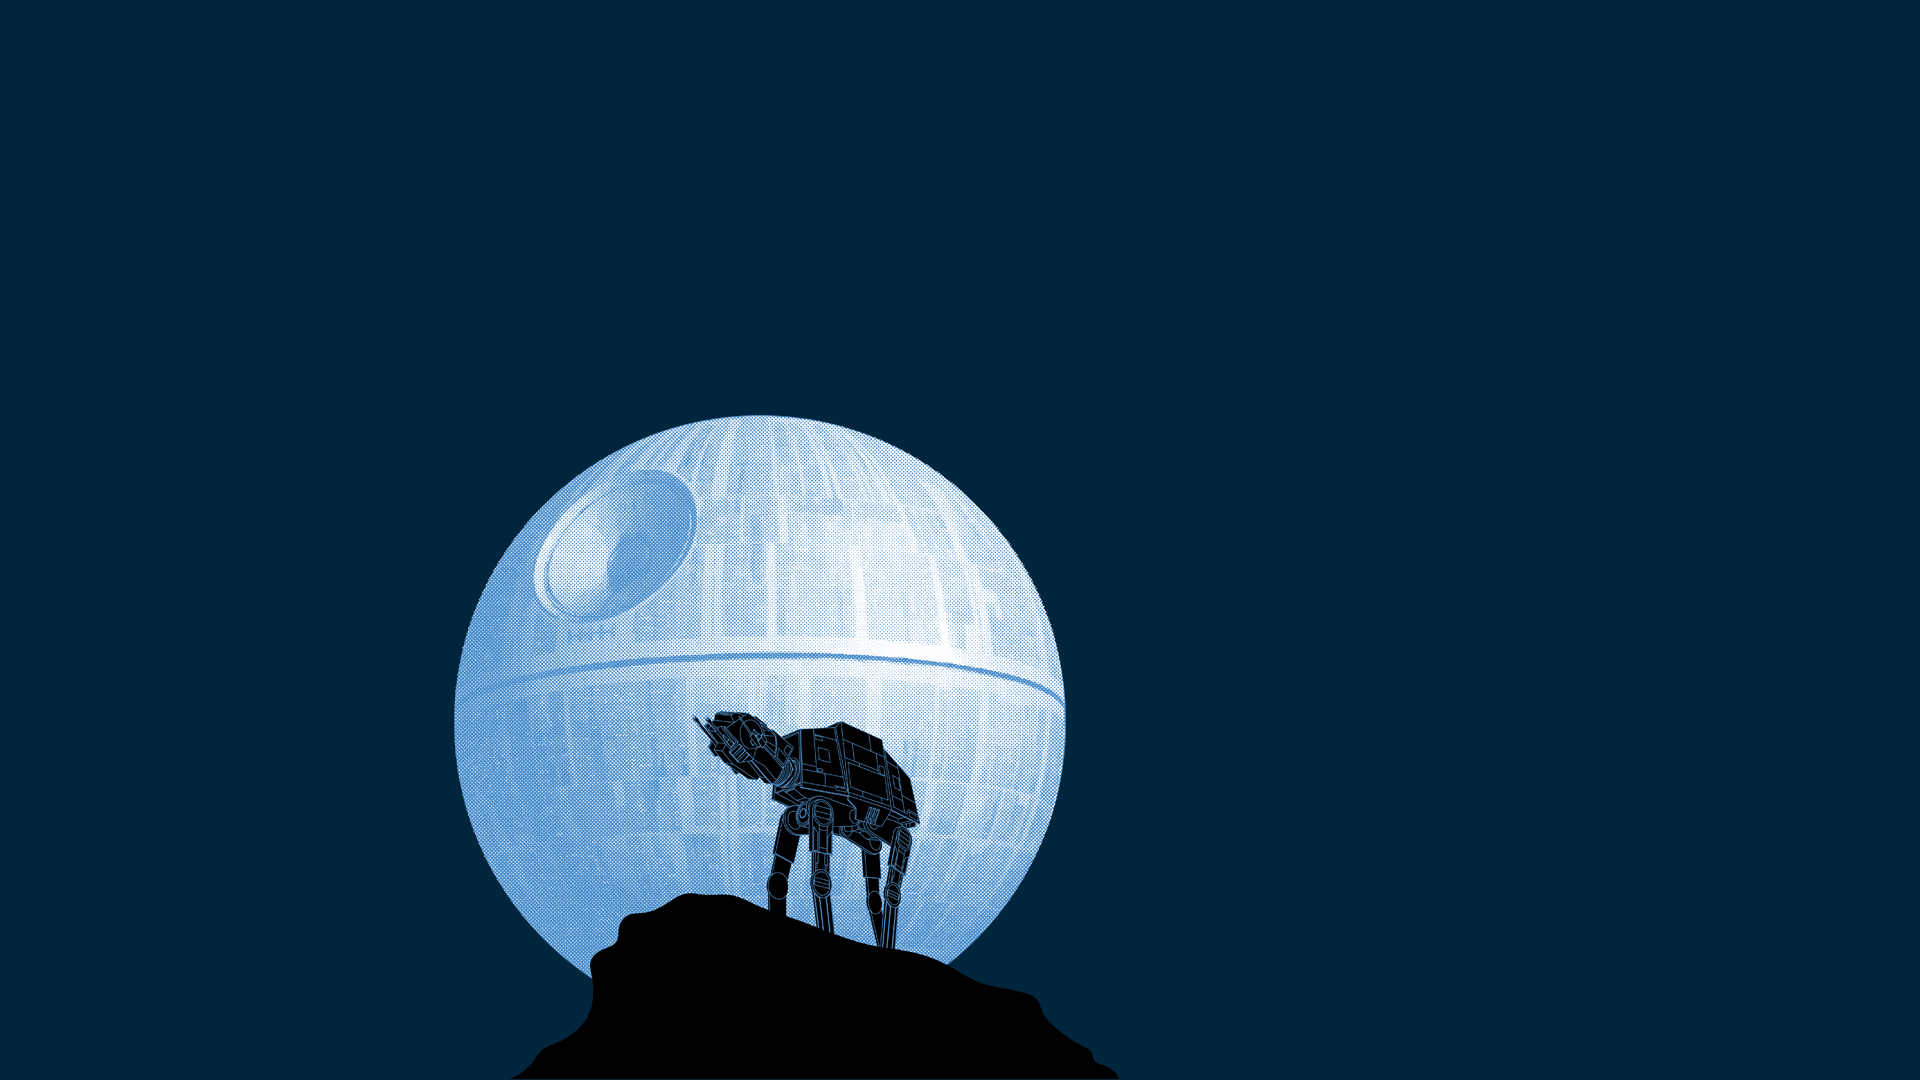 Star Wars minimalistic humor Wallpaper